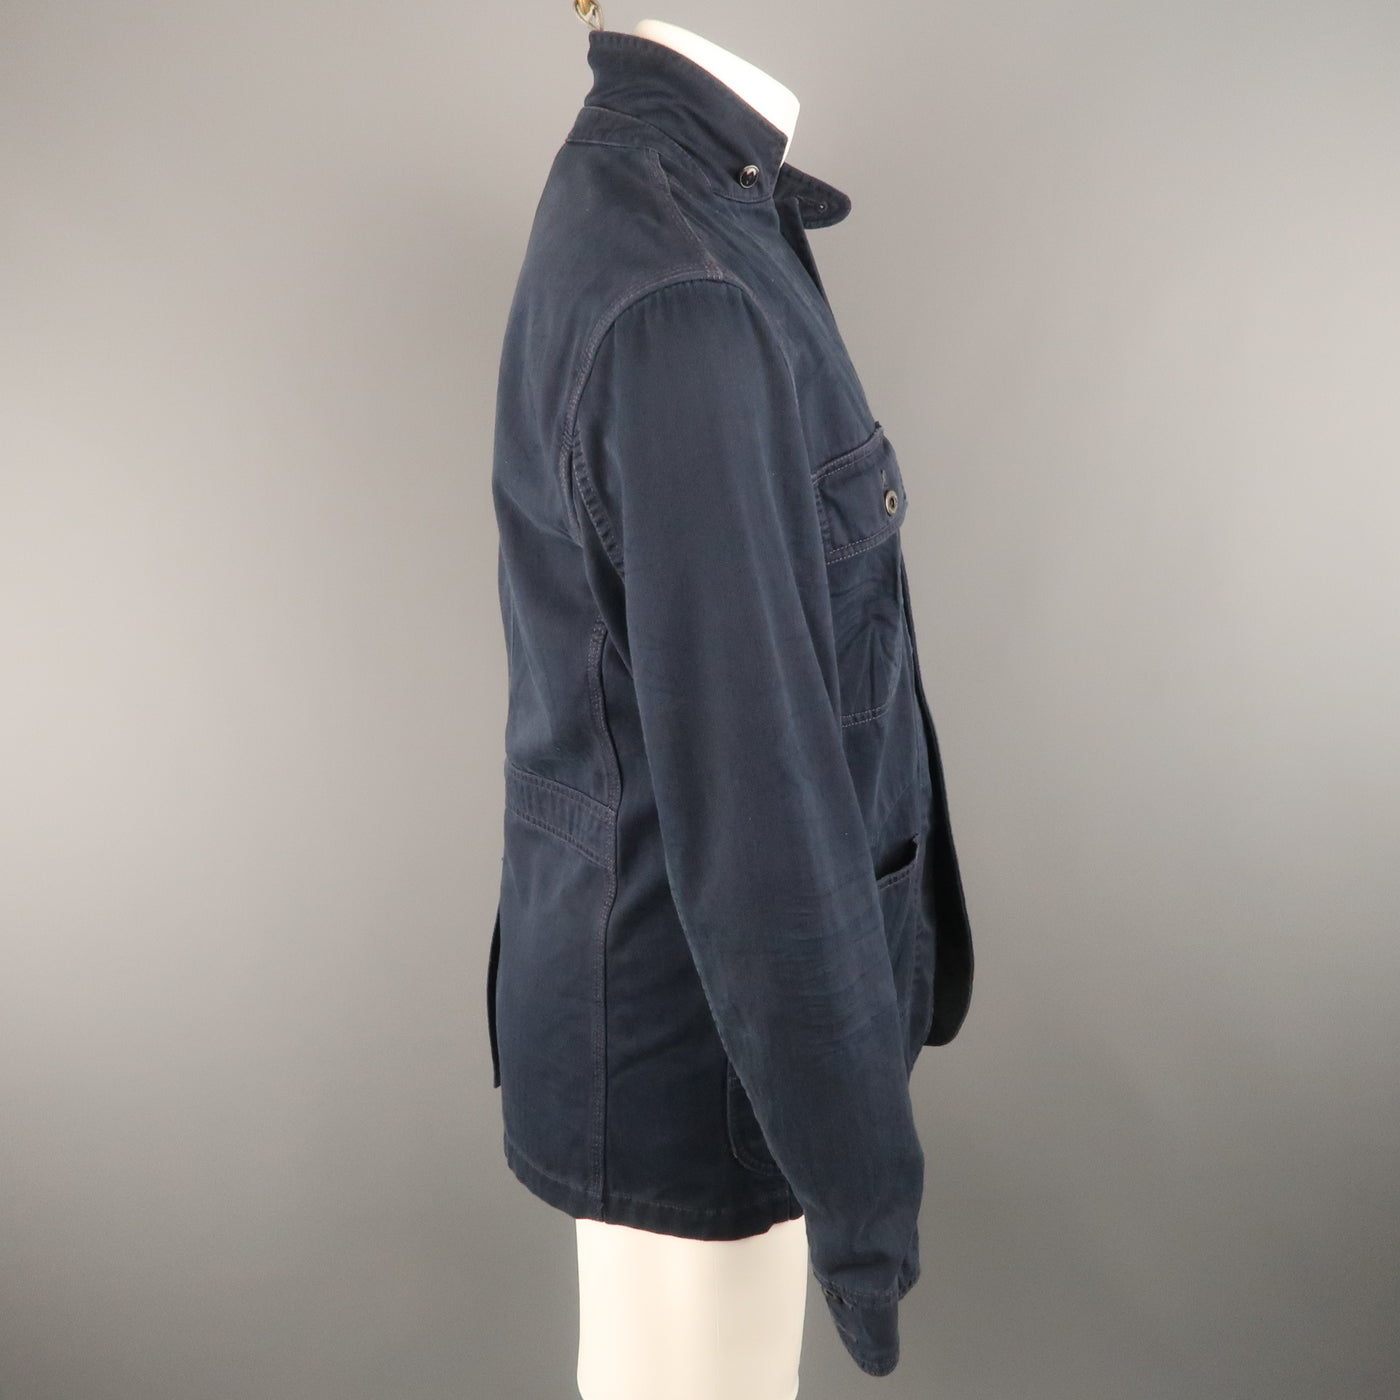 RALPH LAUREN M Navy Solid Cotton Worker Jacket